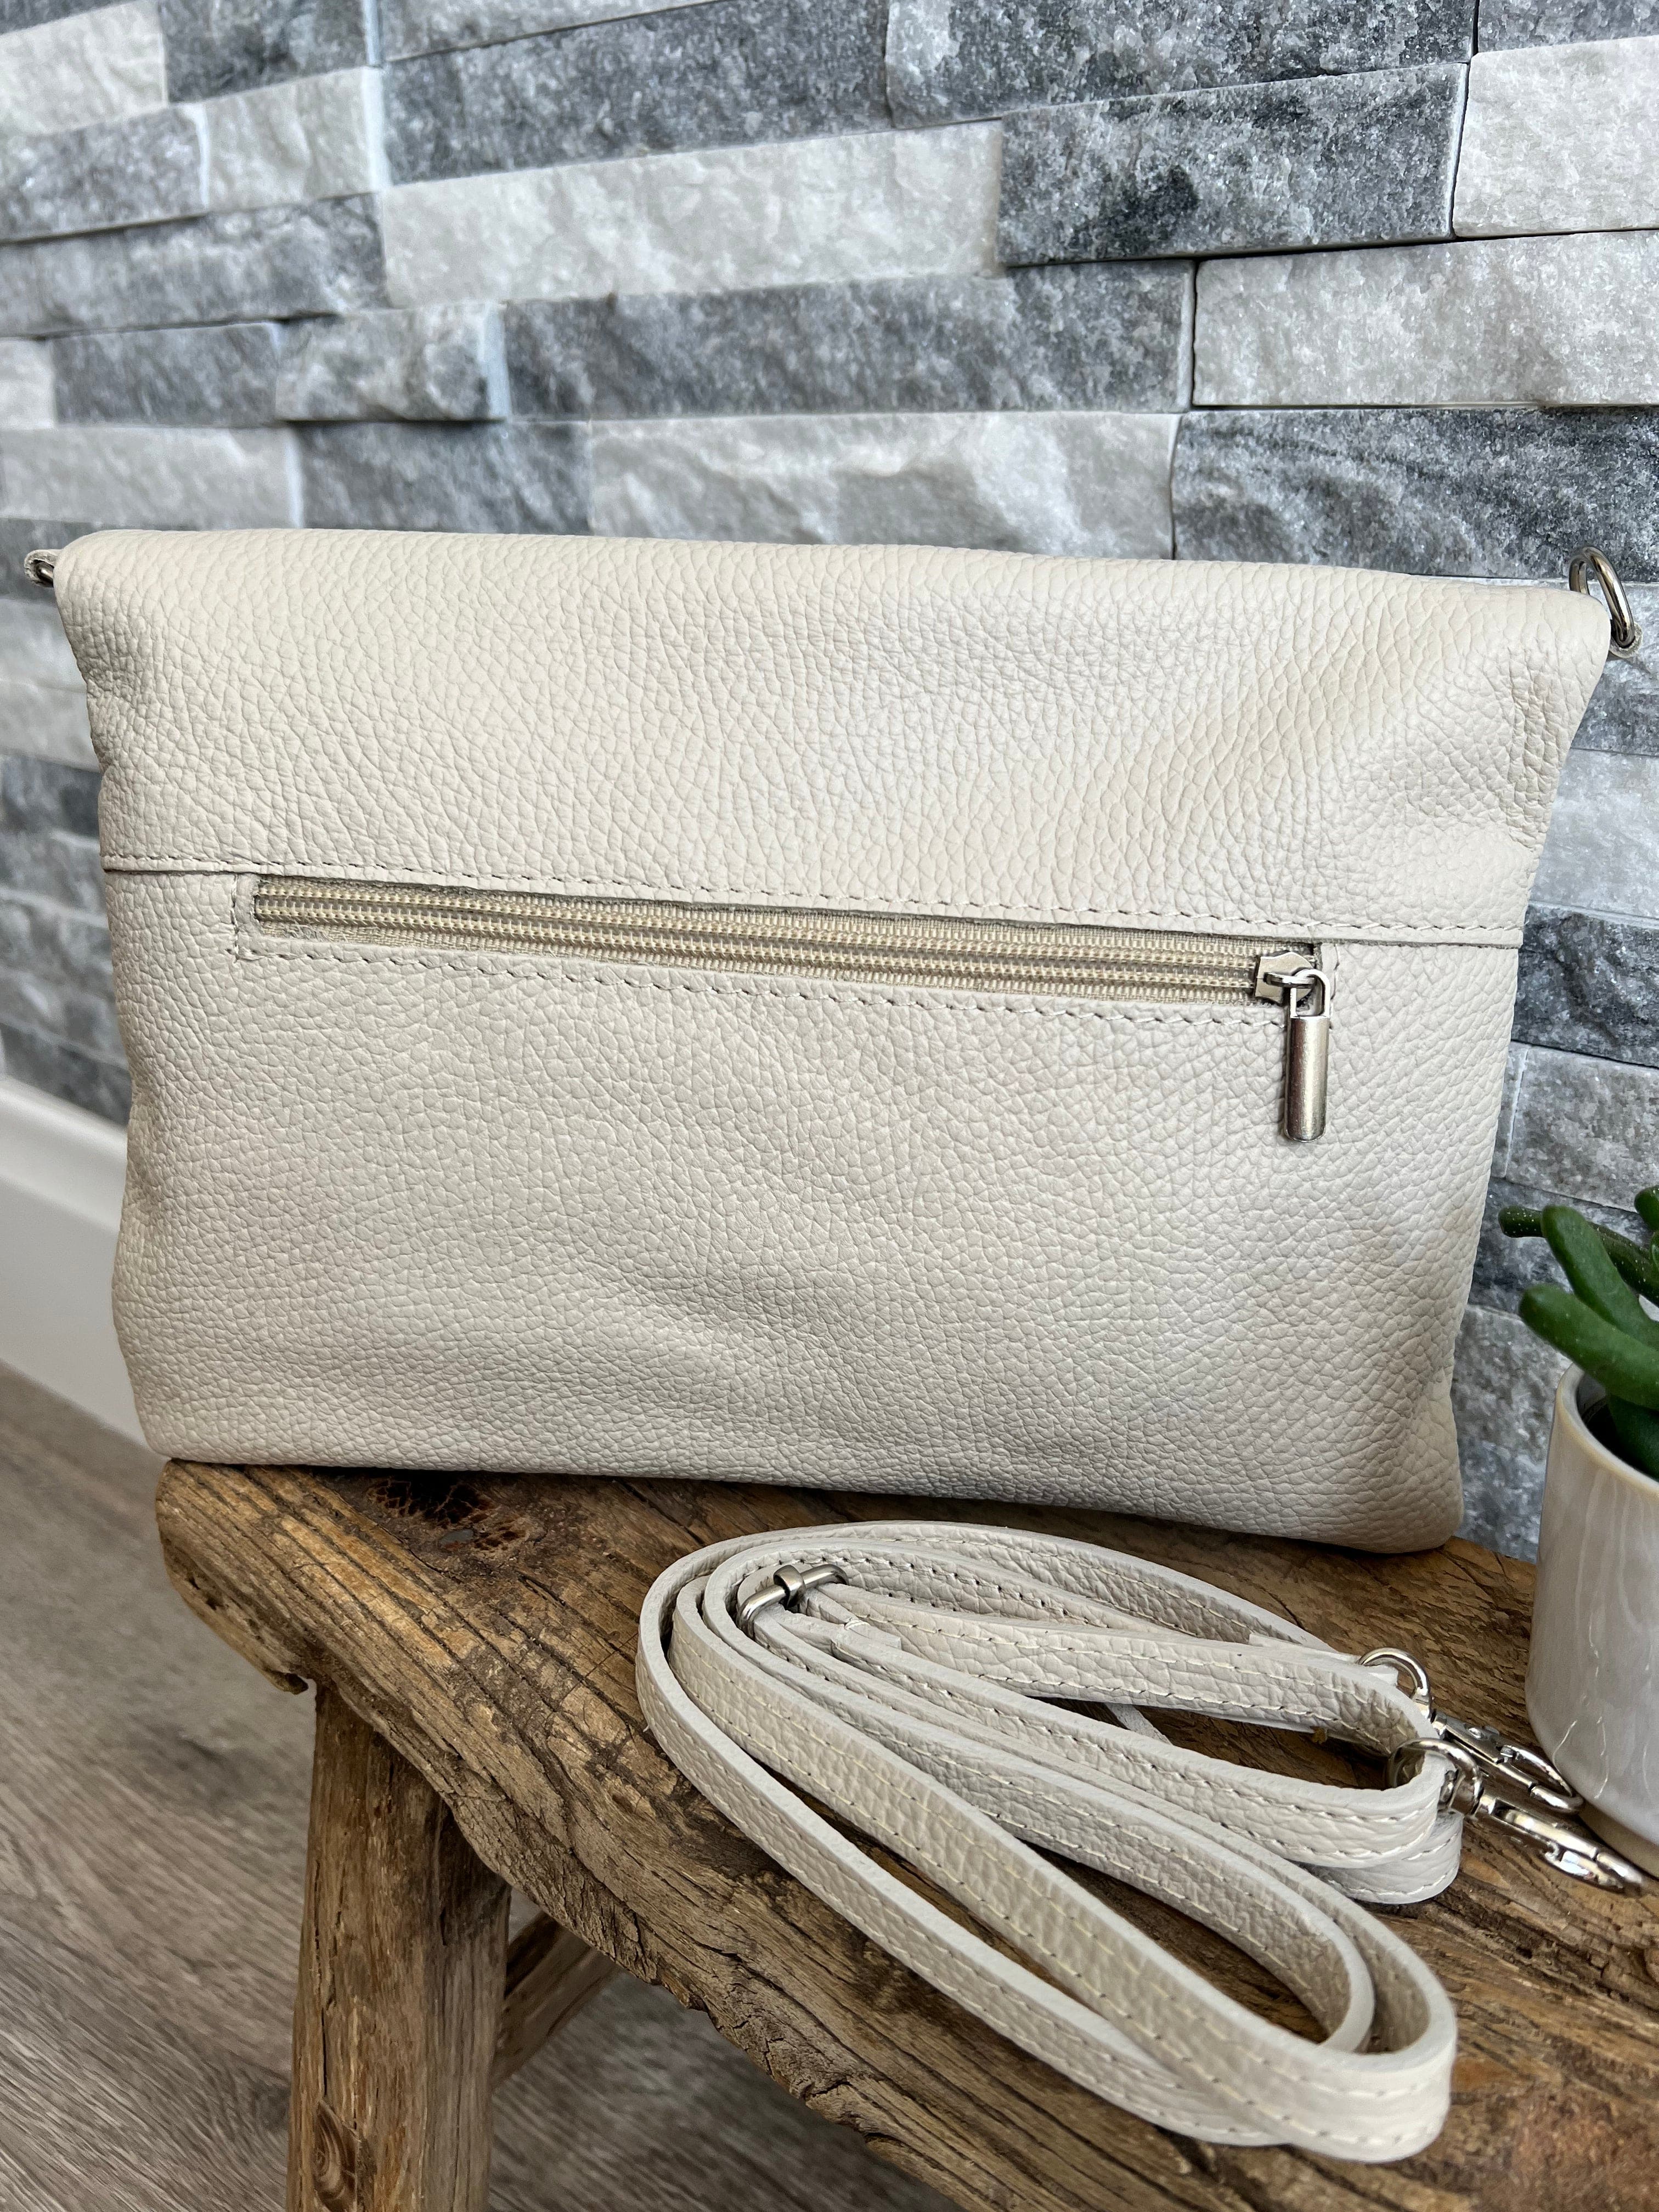 lusciousscarves Handbags Cream Italian Leather Clutch Bag